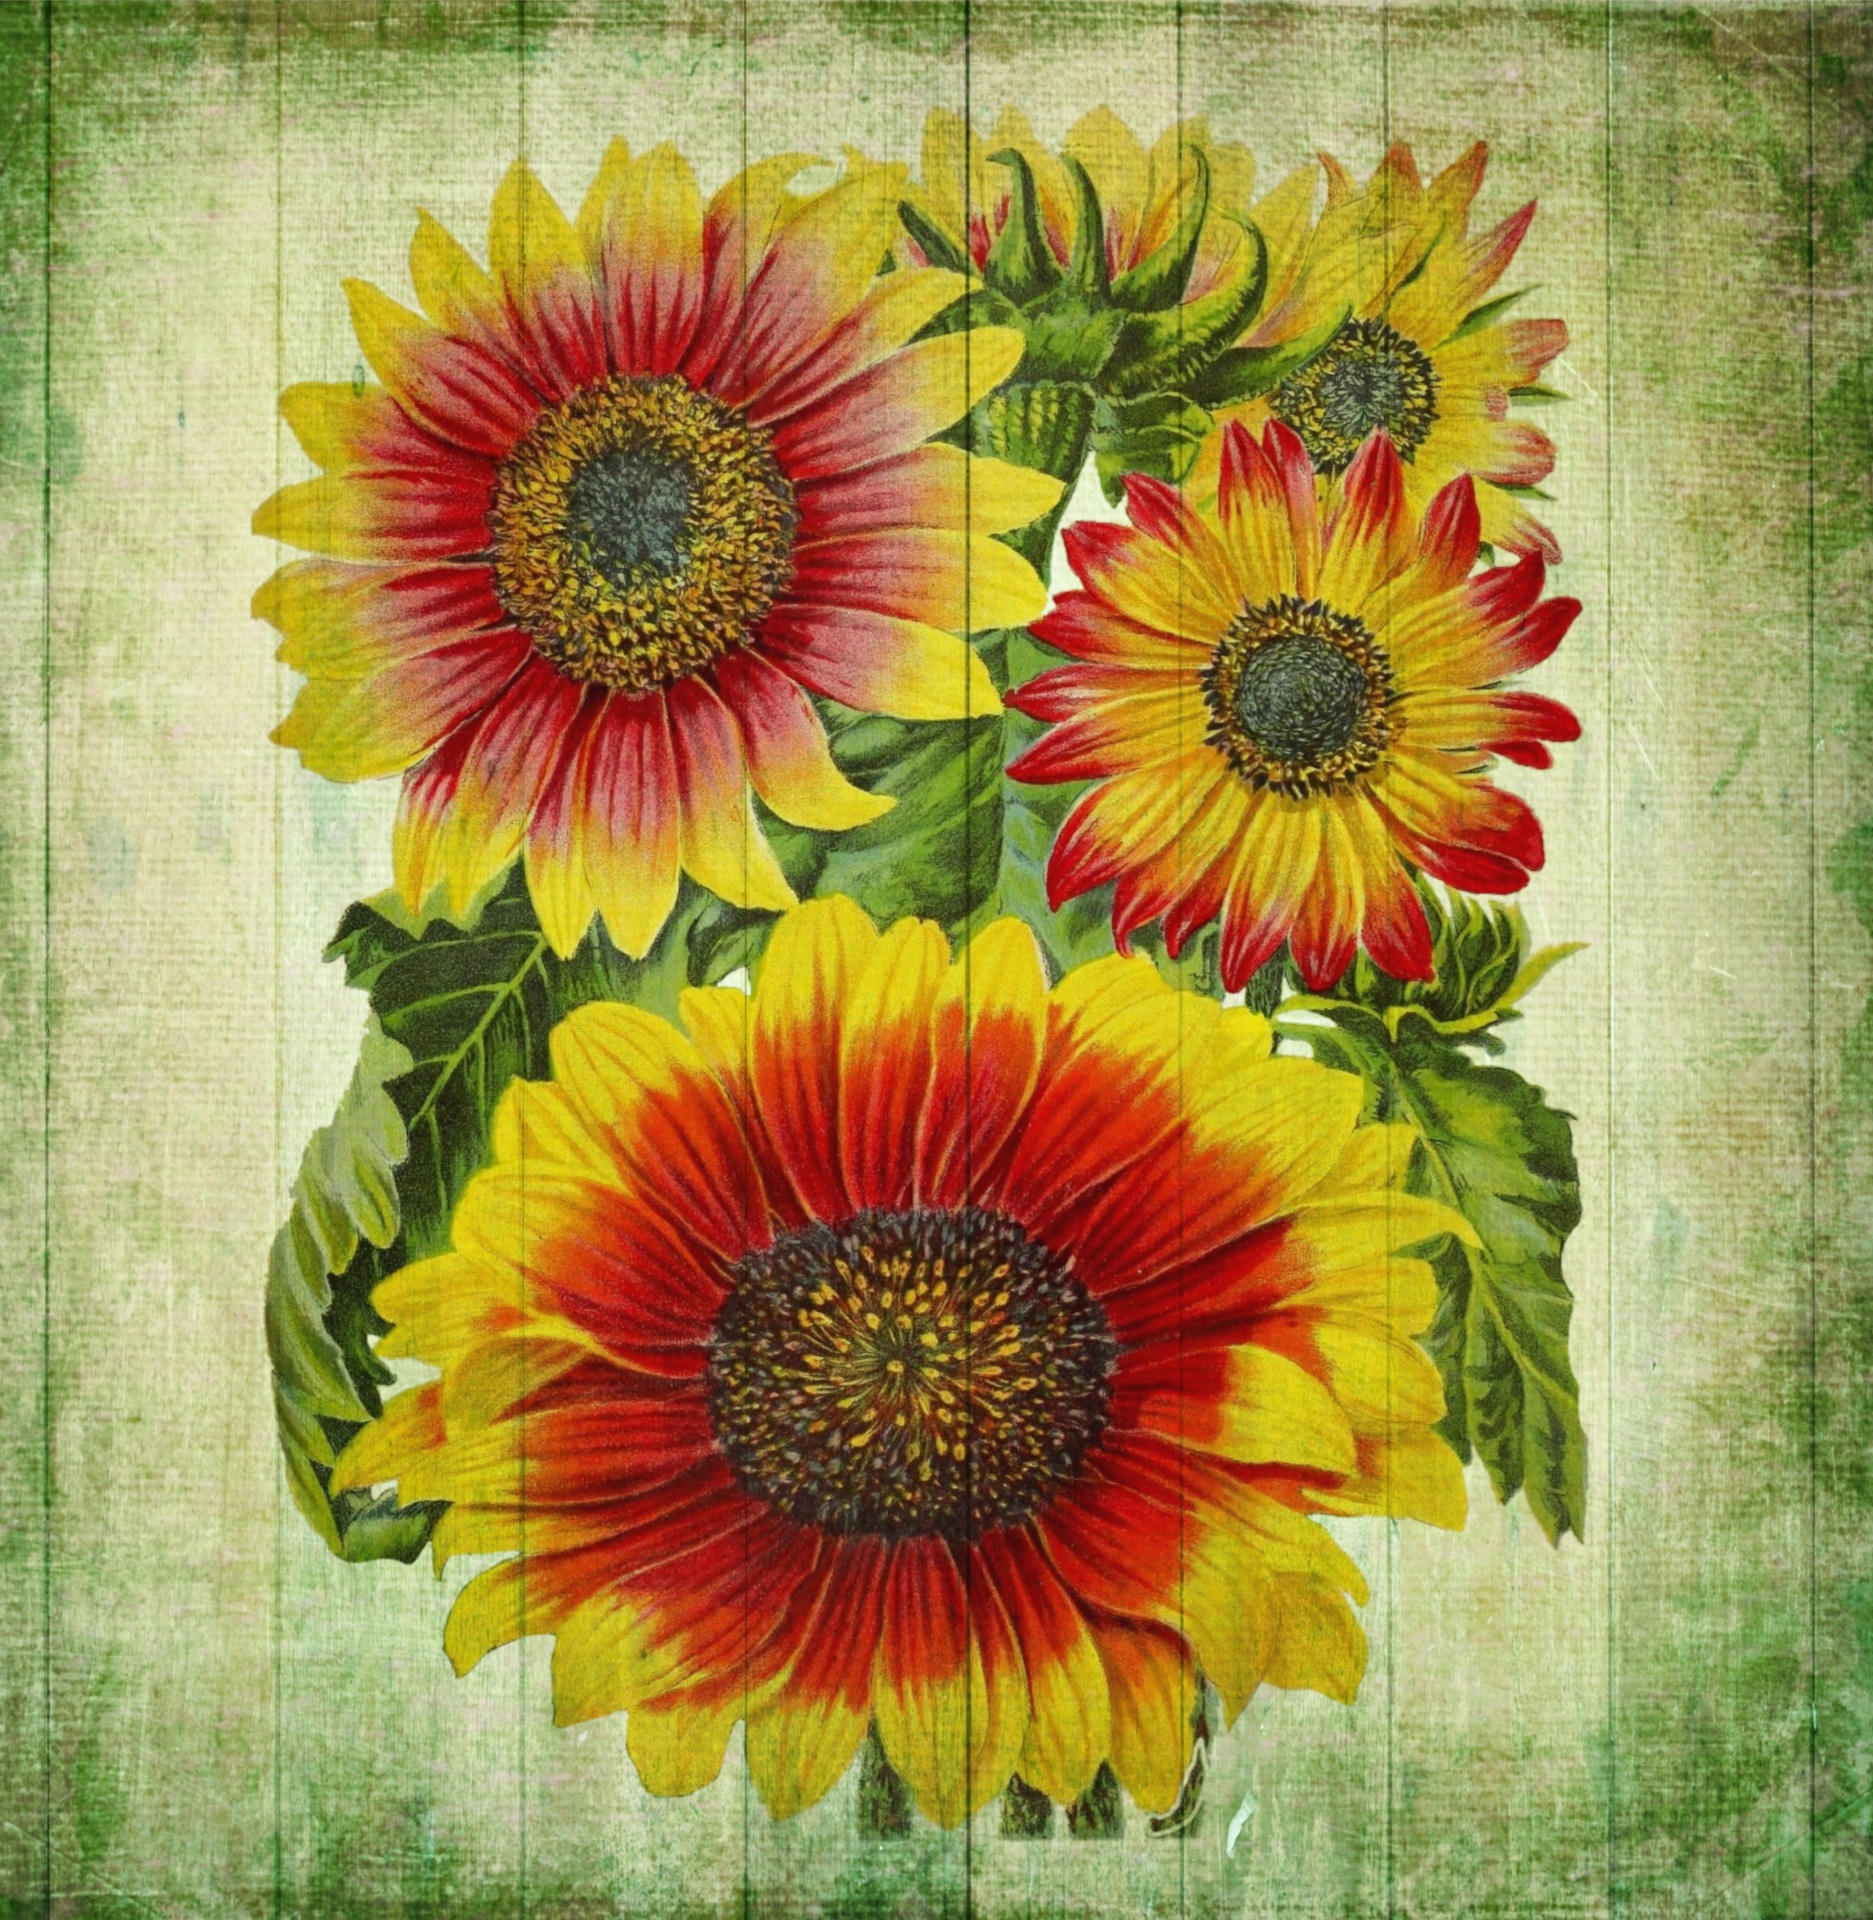 Vintage Art Flowers Sunflowers